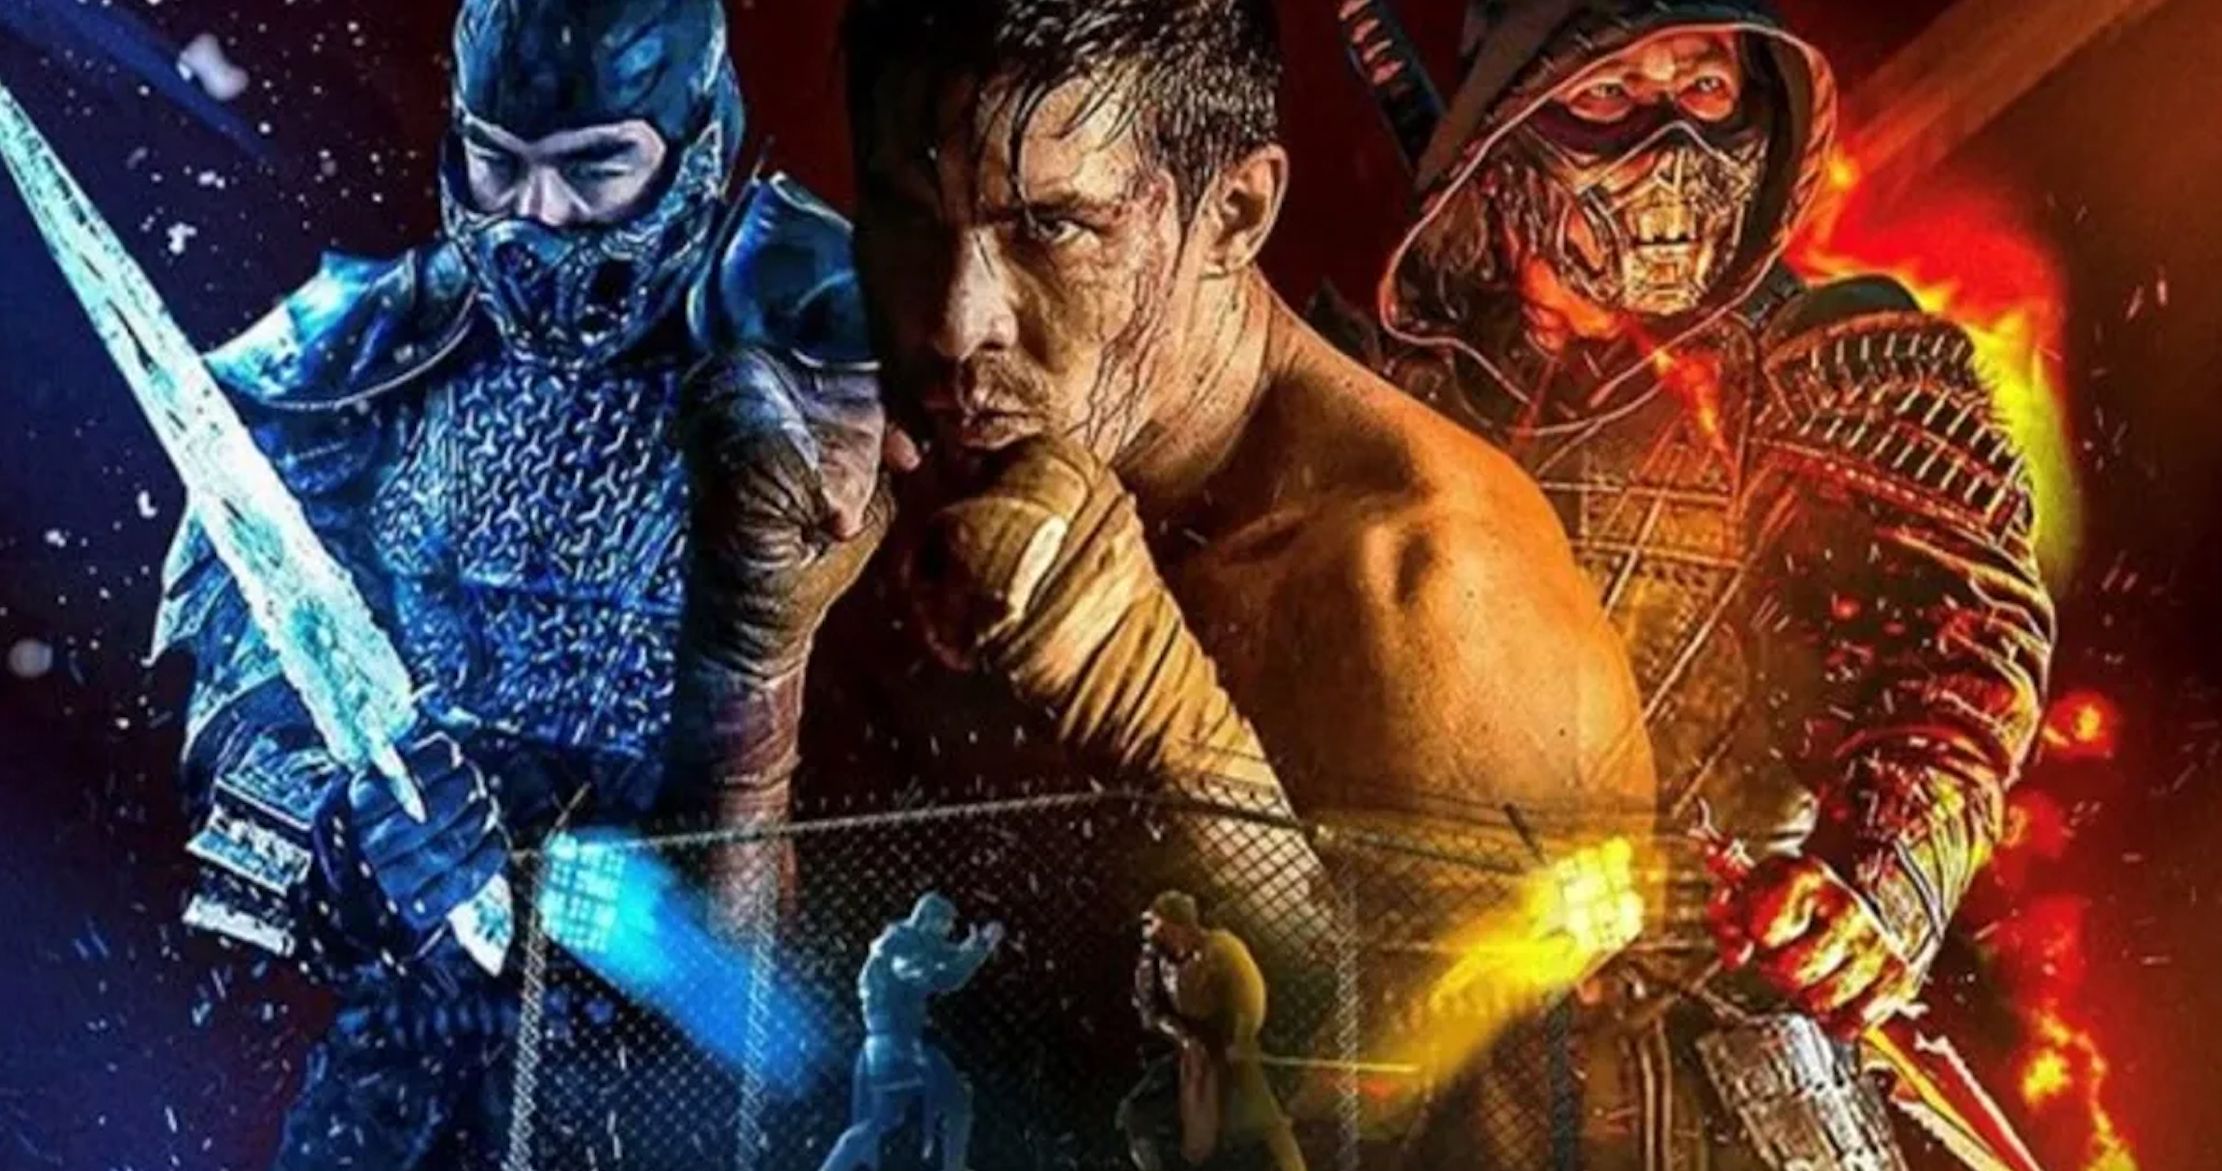 Mortal Kombat Packs a Big Punch at Both the Box Office and HBO Max